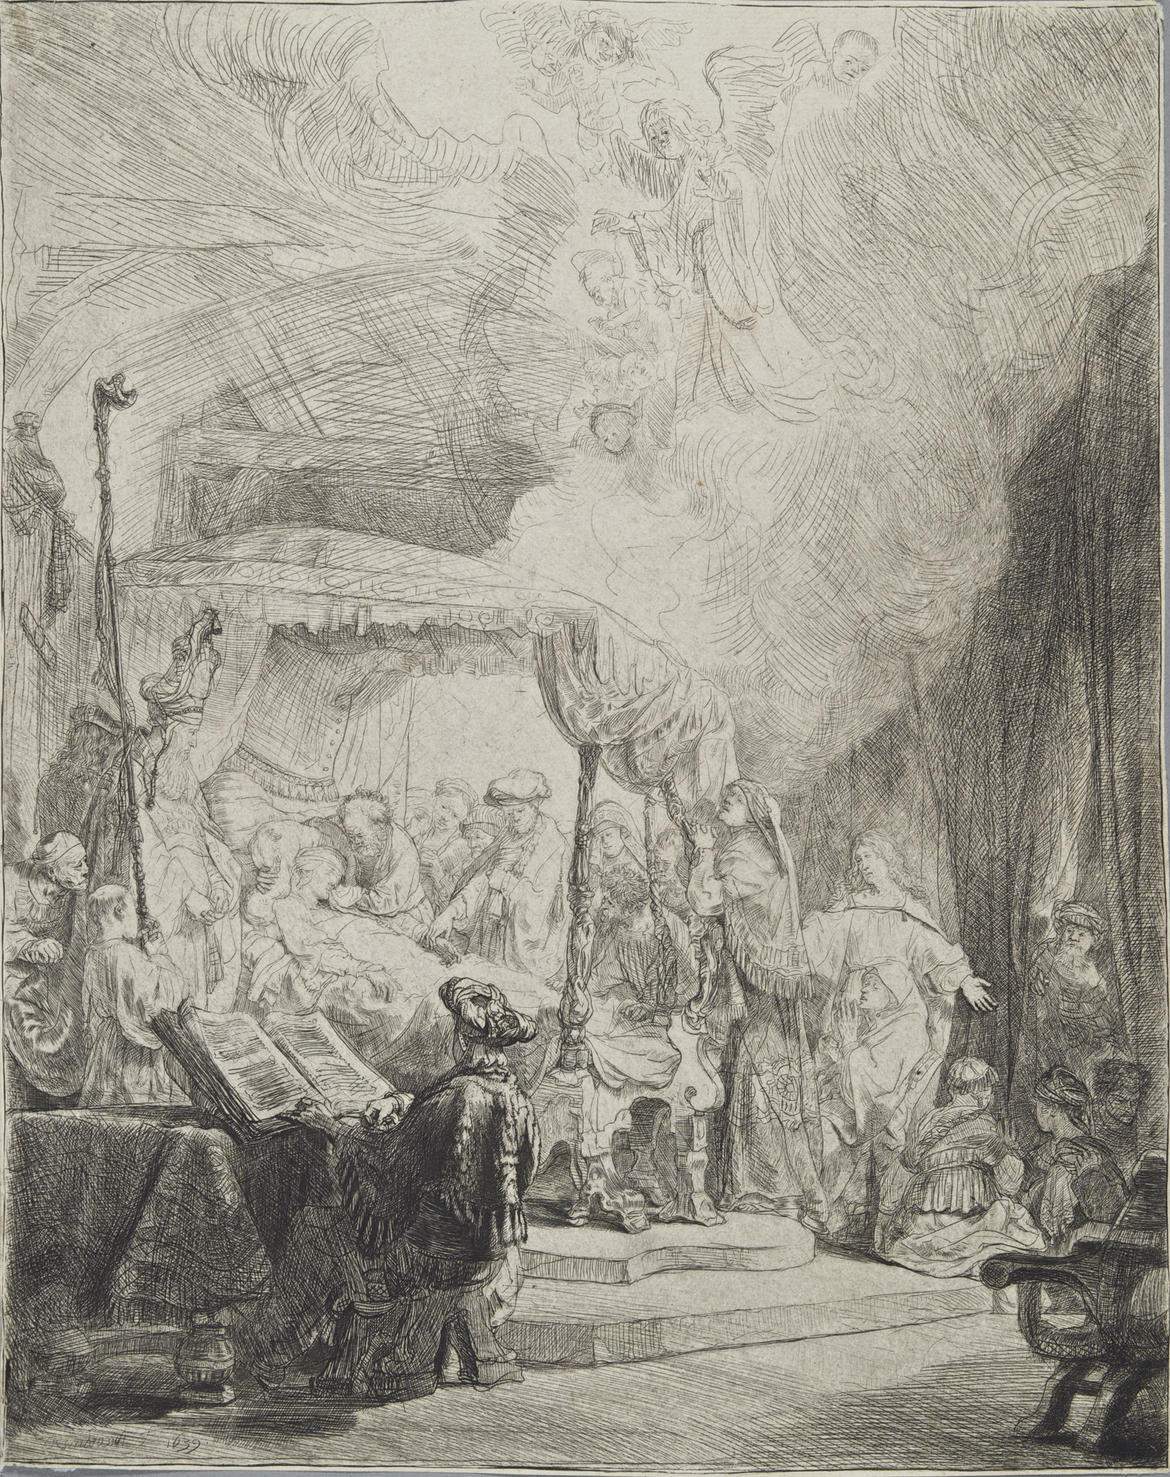 Une exposition à Trente illustre l'œuvre graphique de Rembrandt à travers une collection du Trentin